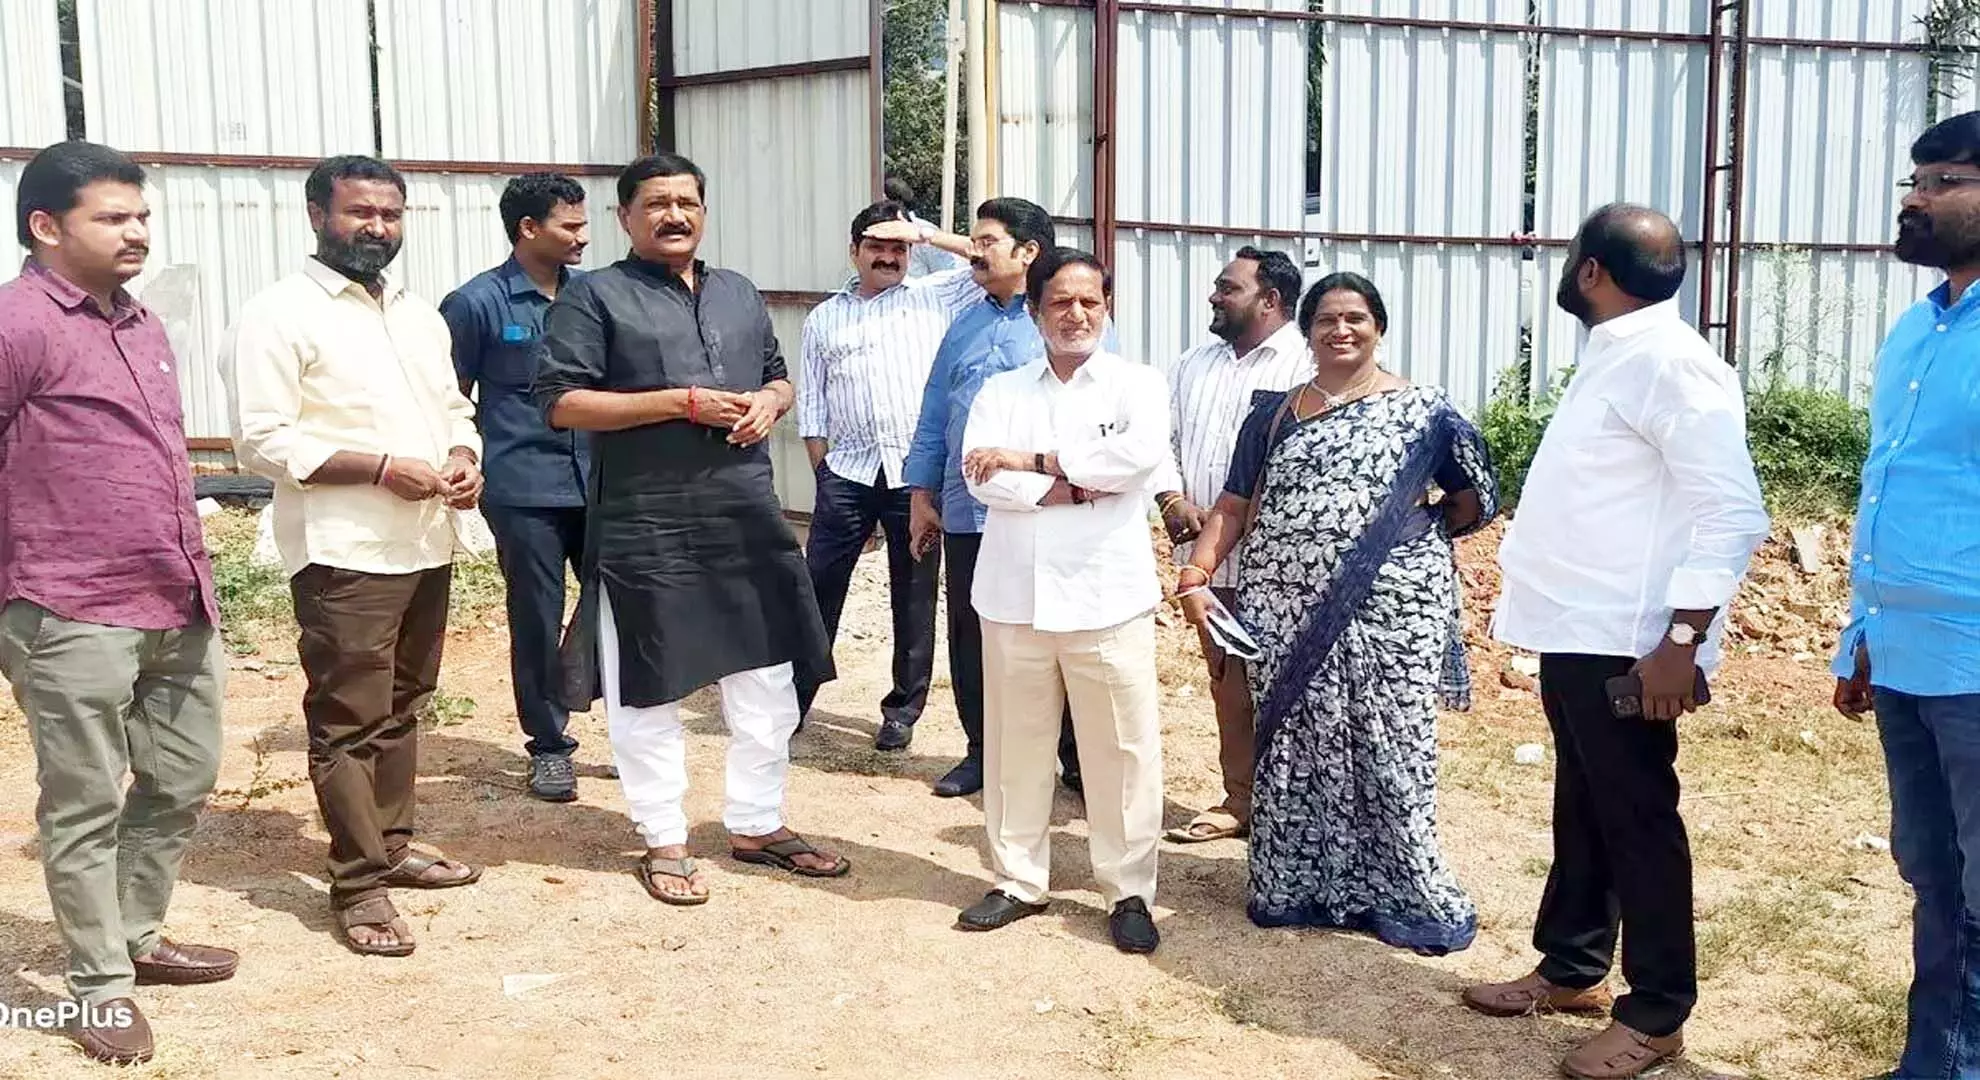 गंता श्रीनिवास राव ने नारा लोकेश के शंकरवम के आयोजन स्थलों का निरीक्षण किया